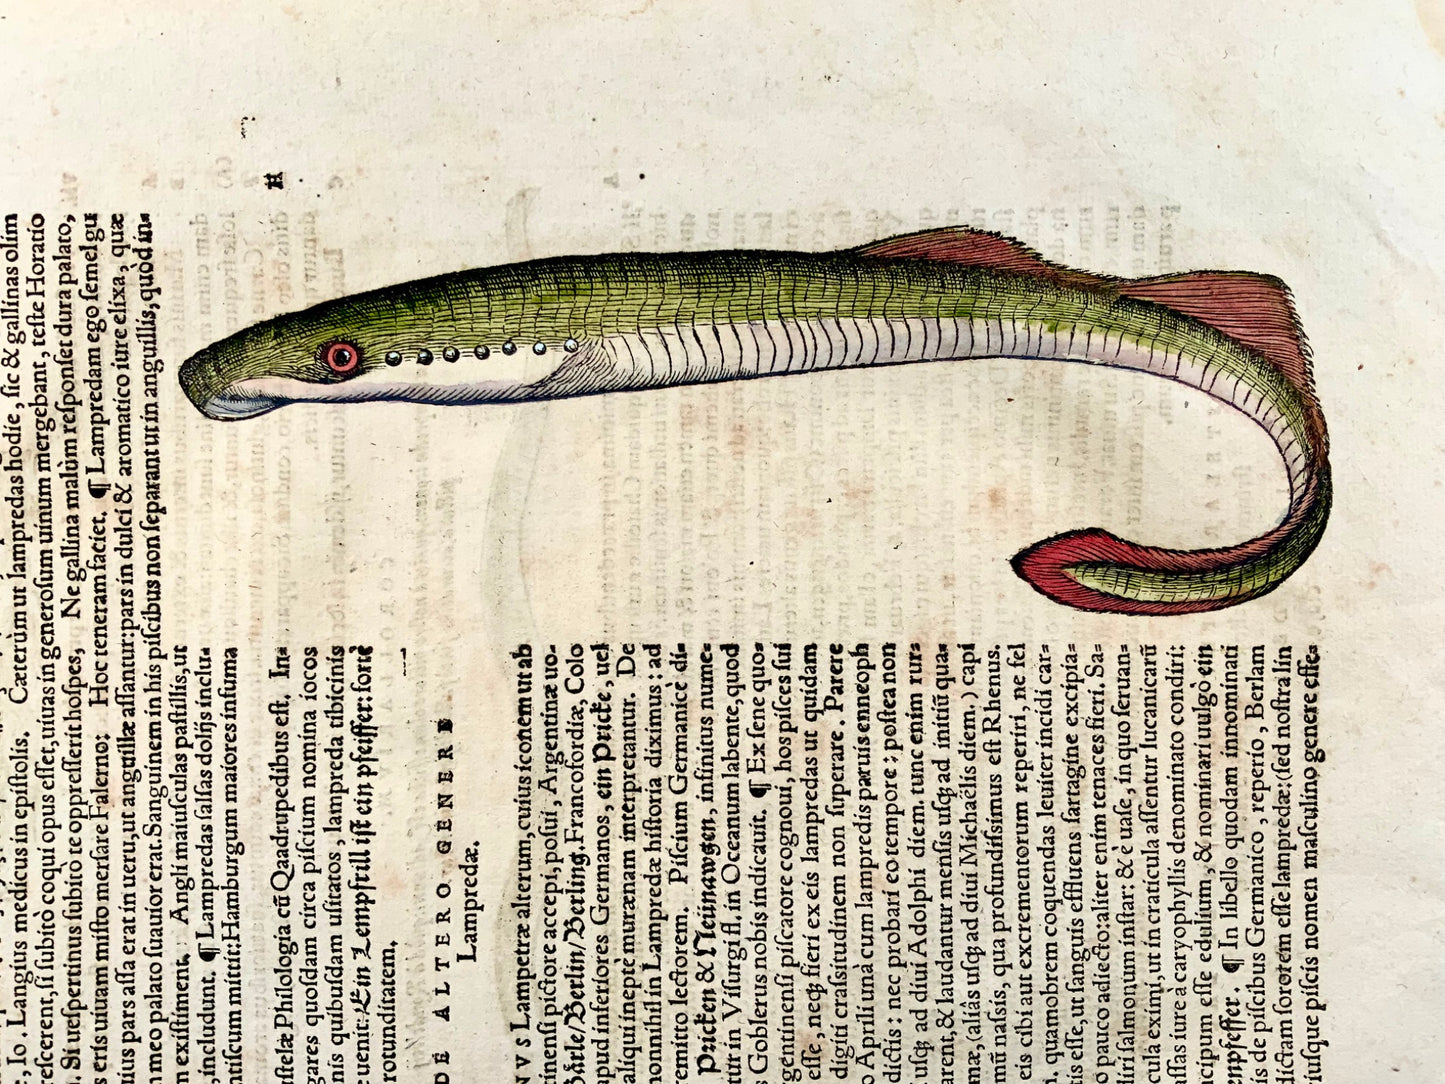 1558 Lamproie Eels, Conrad Gesner, folio, gravure sur bois, coloriée à la main, First State